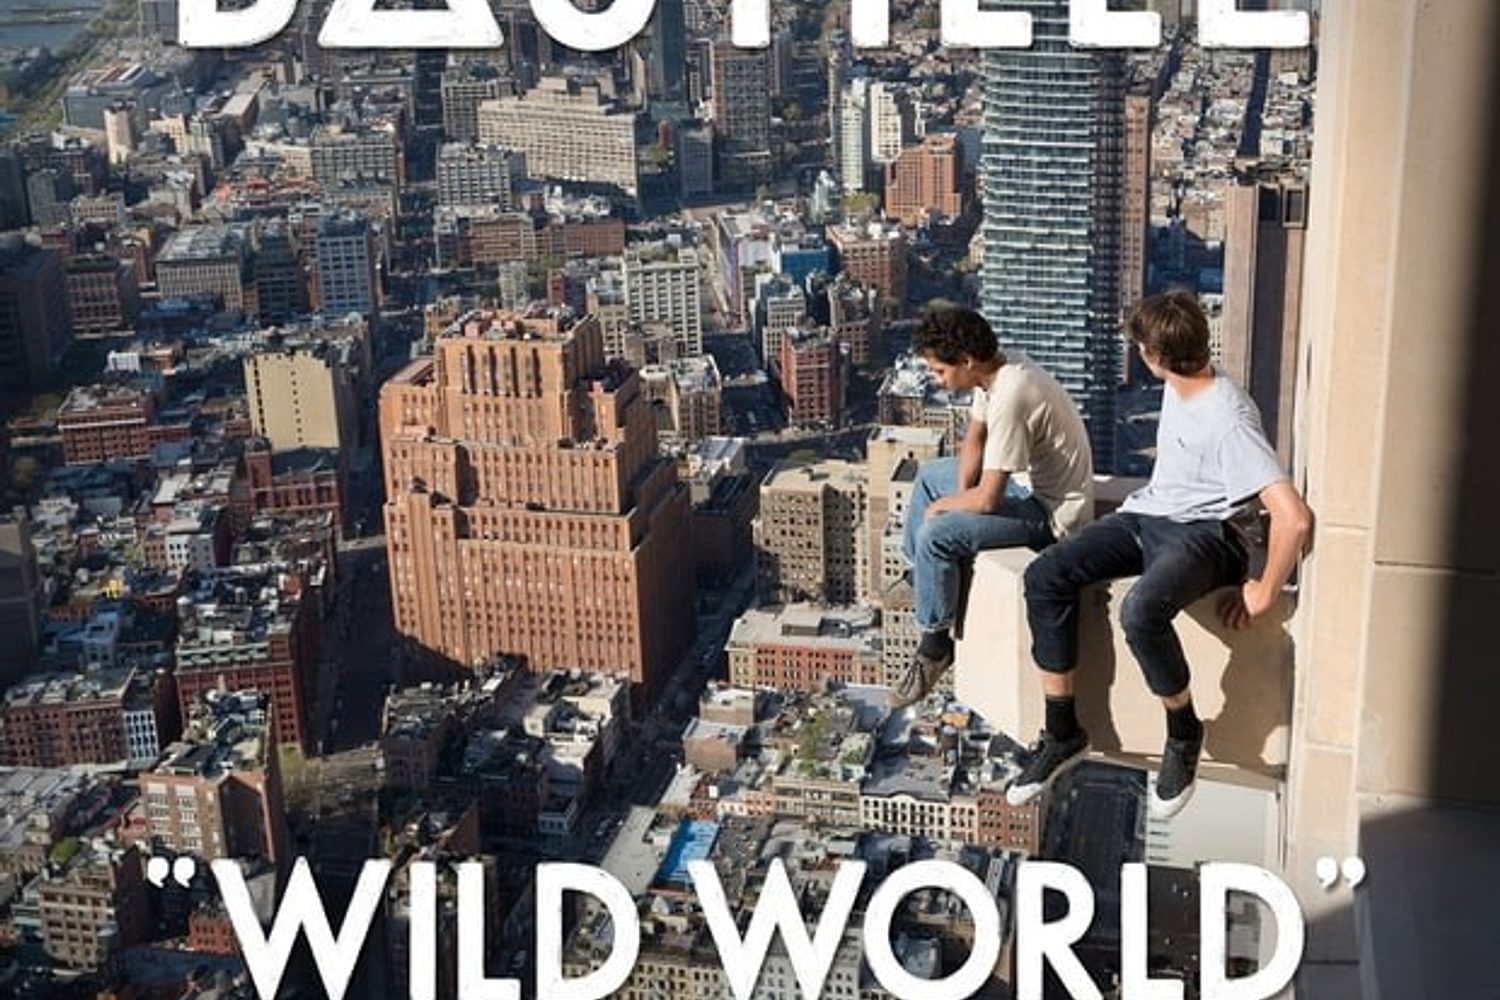 Bastille - Wild World